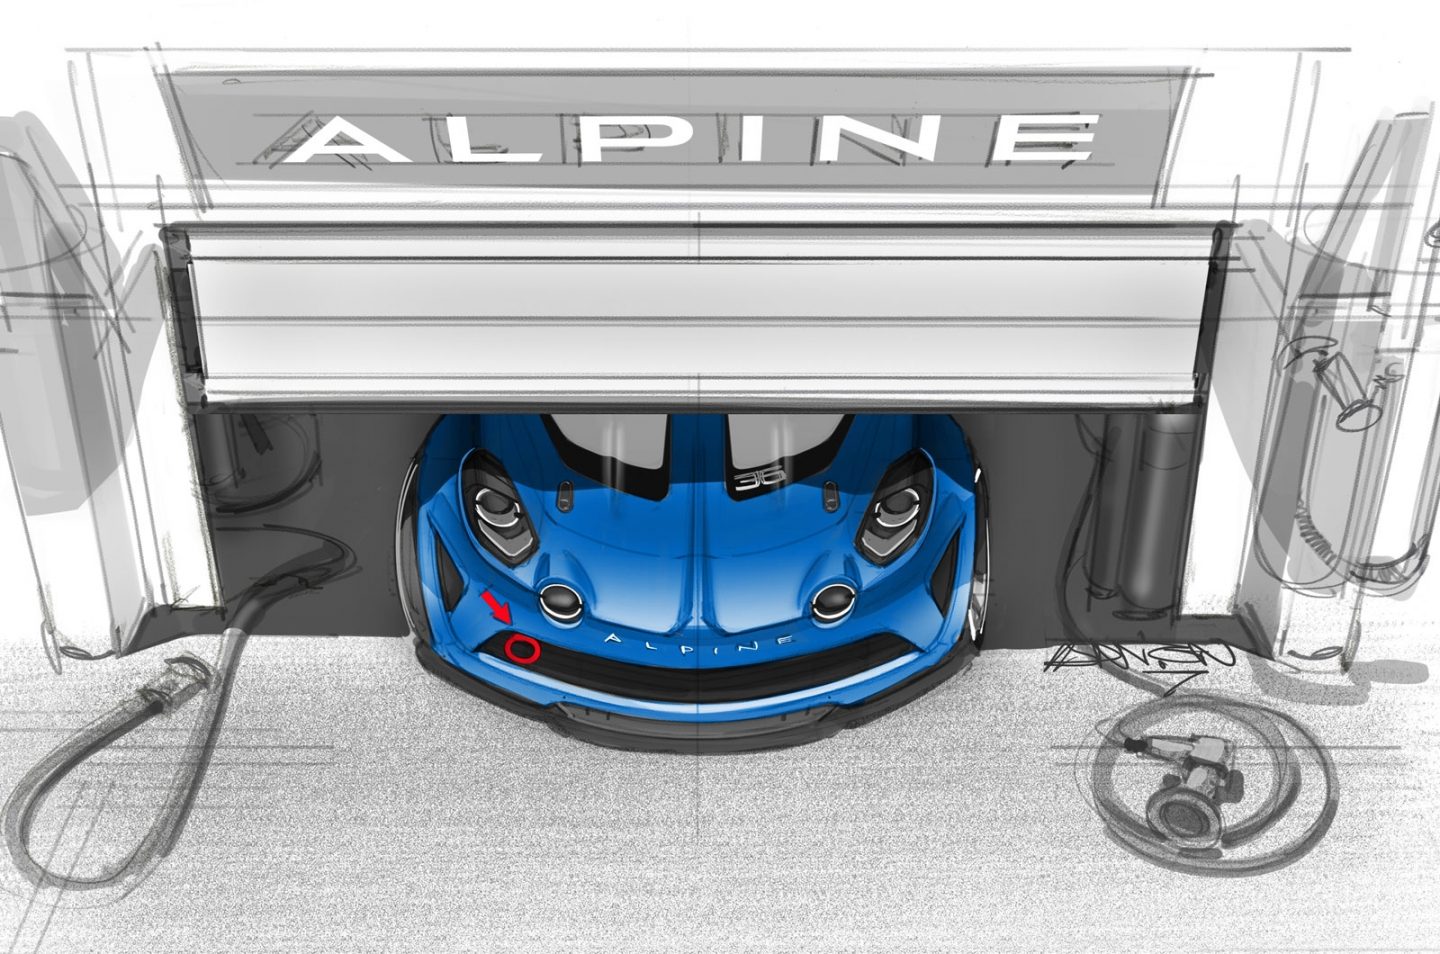 Alpine A110 Cup Signatech racing